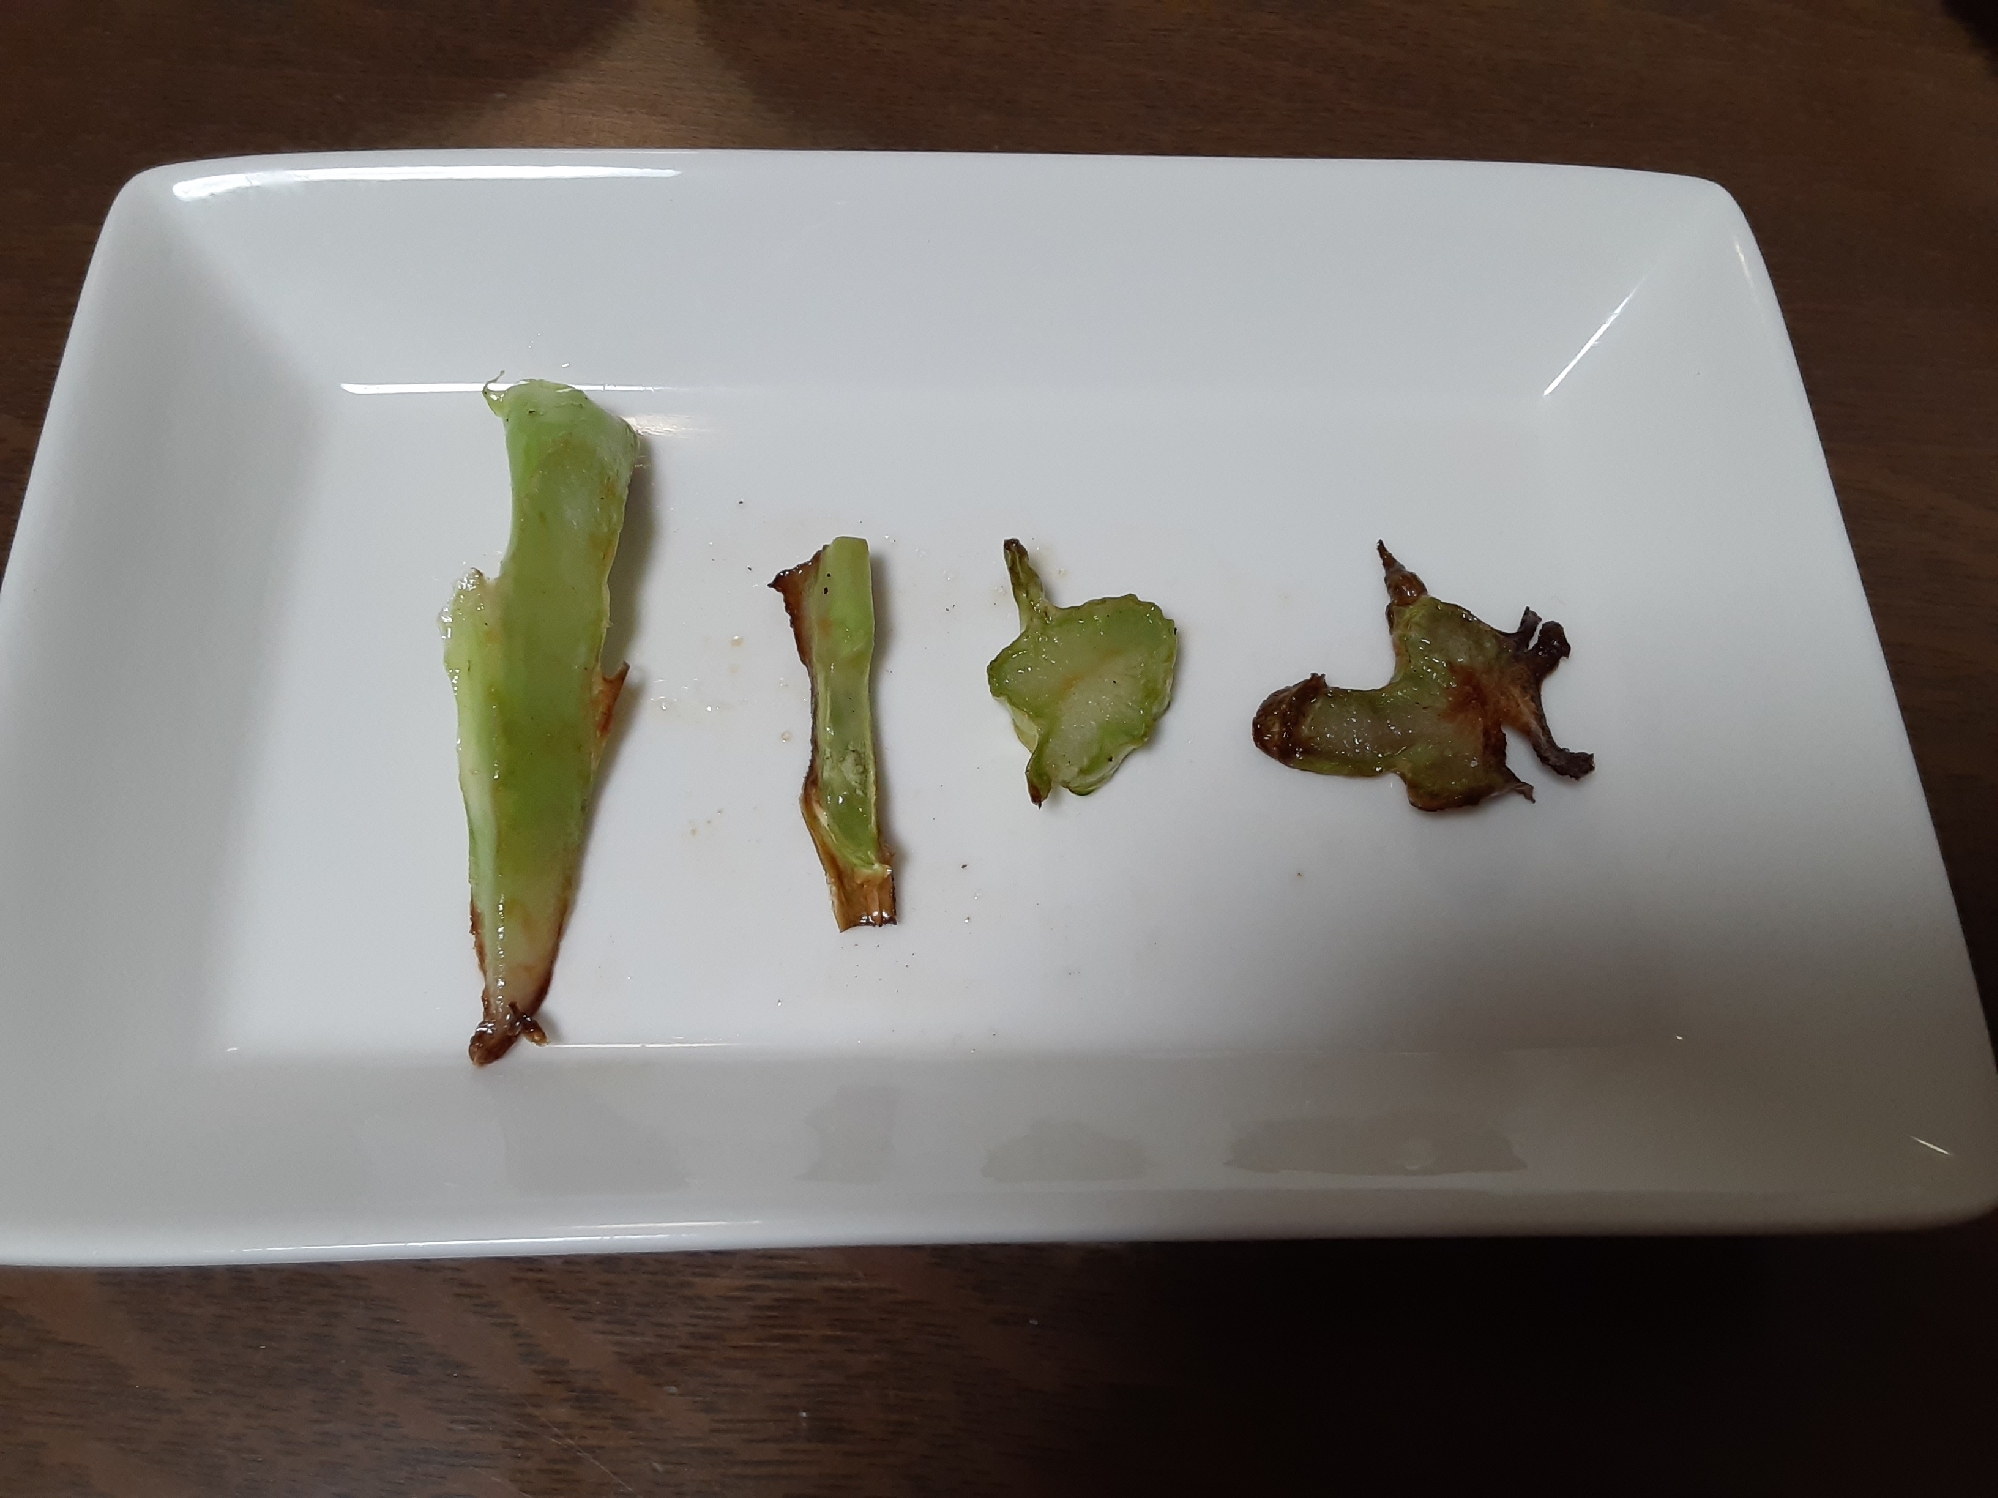 【ブロッコリーの茎】4種の素揚げ